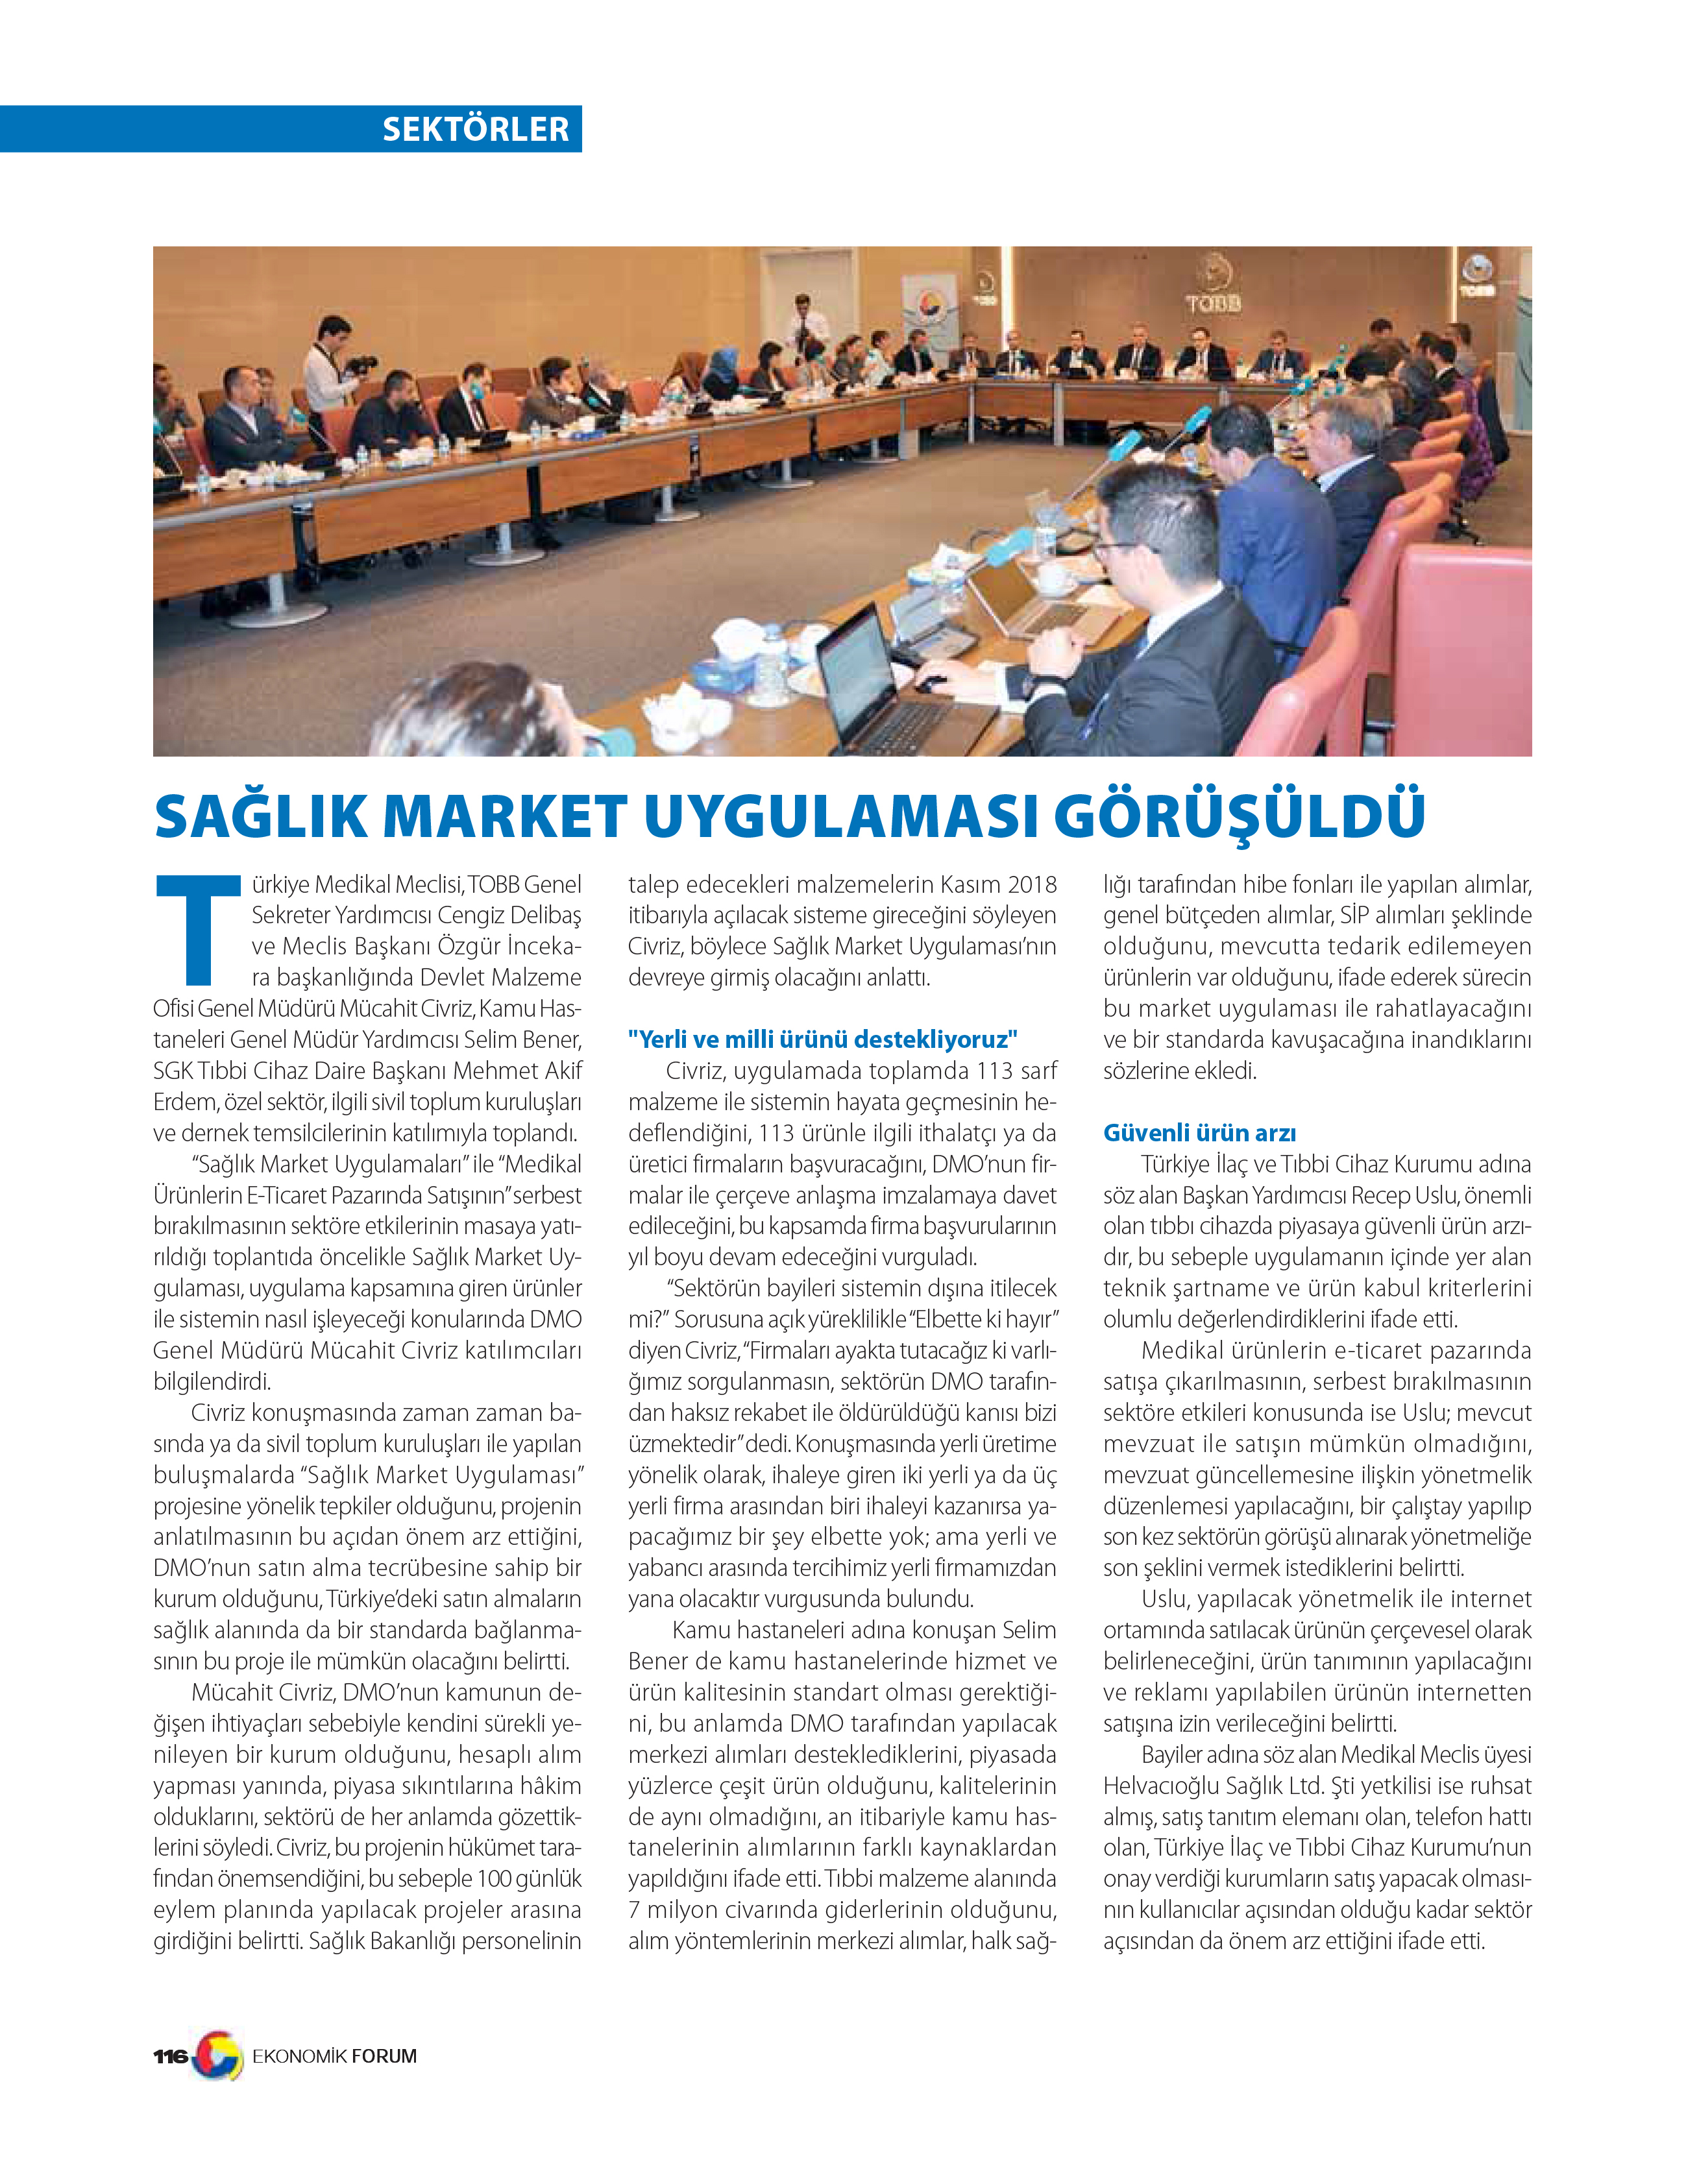 TOBB Ekonomik Forum Dergisi -Sağlık Market Uygulaması